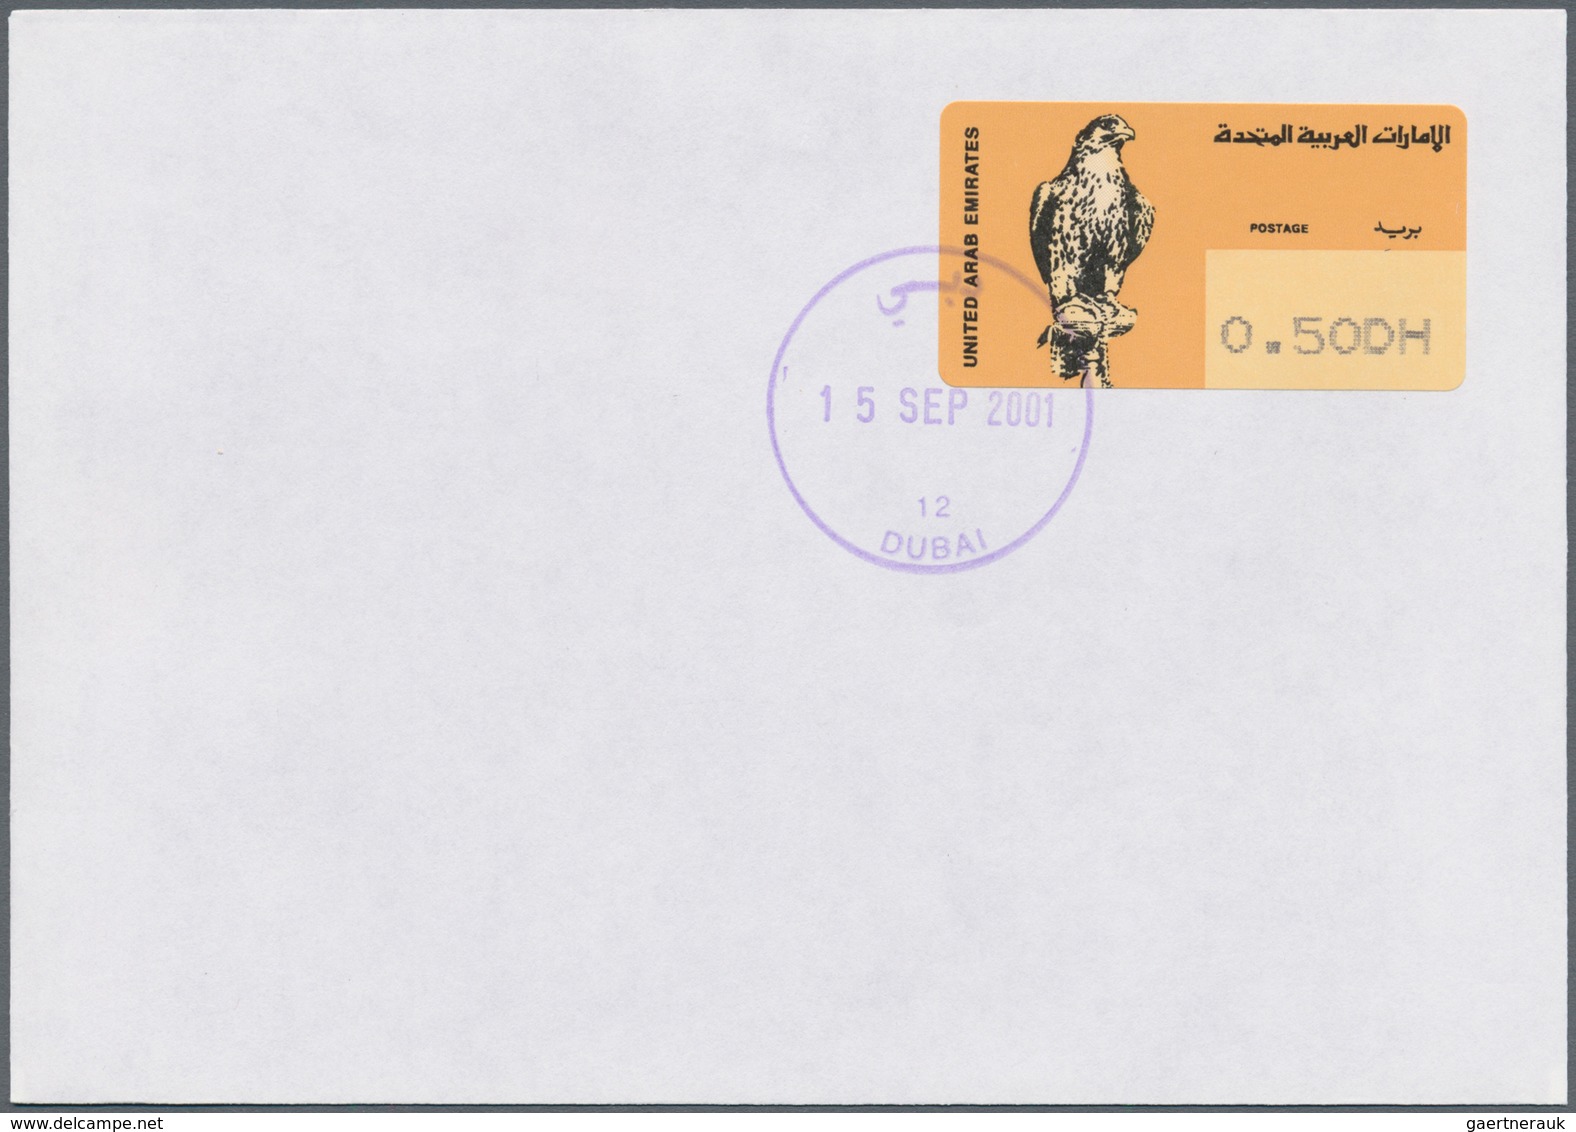 Vereinigte Arabische Emirate - Automatenmarken: 2001. One of the rarest ATM stamp in the world is th